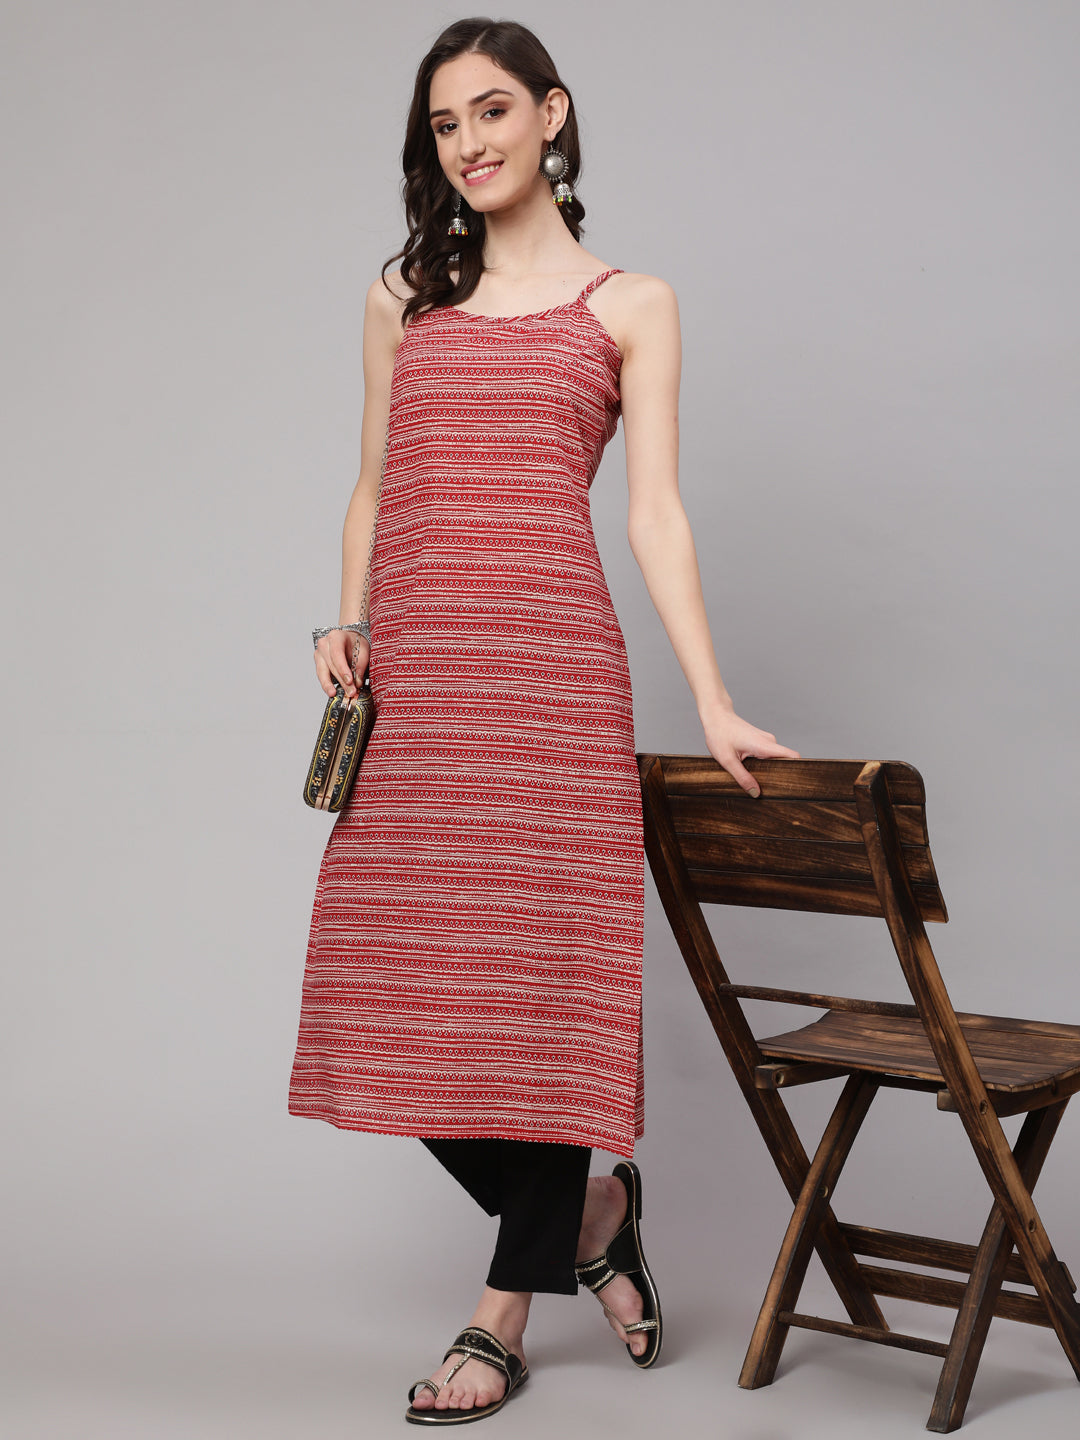 Women's Red Geometric Printed straight sleevesless Kurta - Nayo Clothing